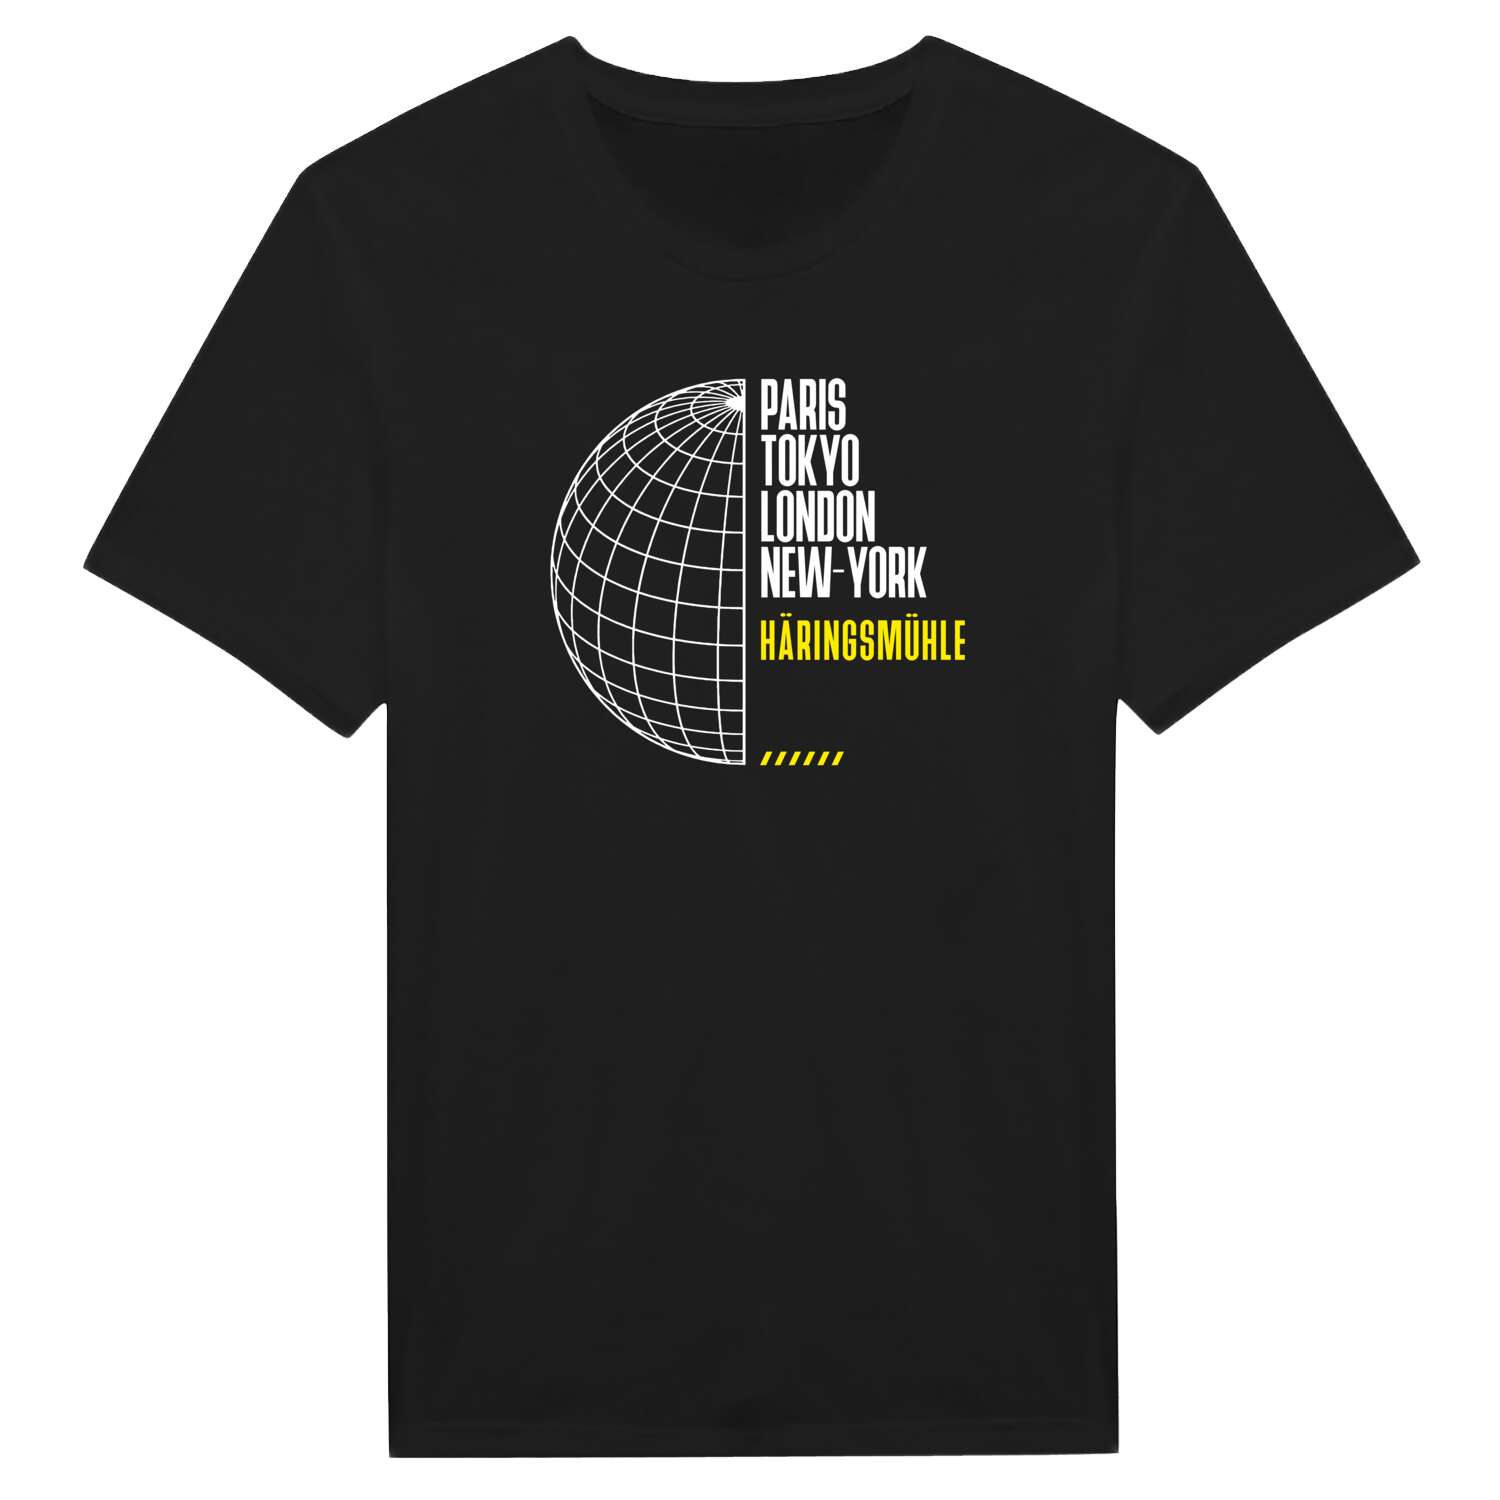 Häringsmühle T-Shirt »Paris Tokyo London«